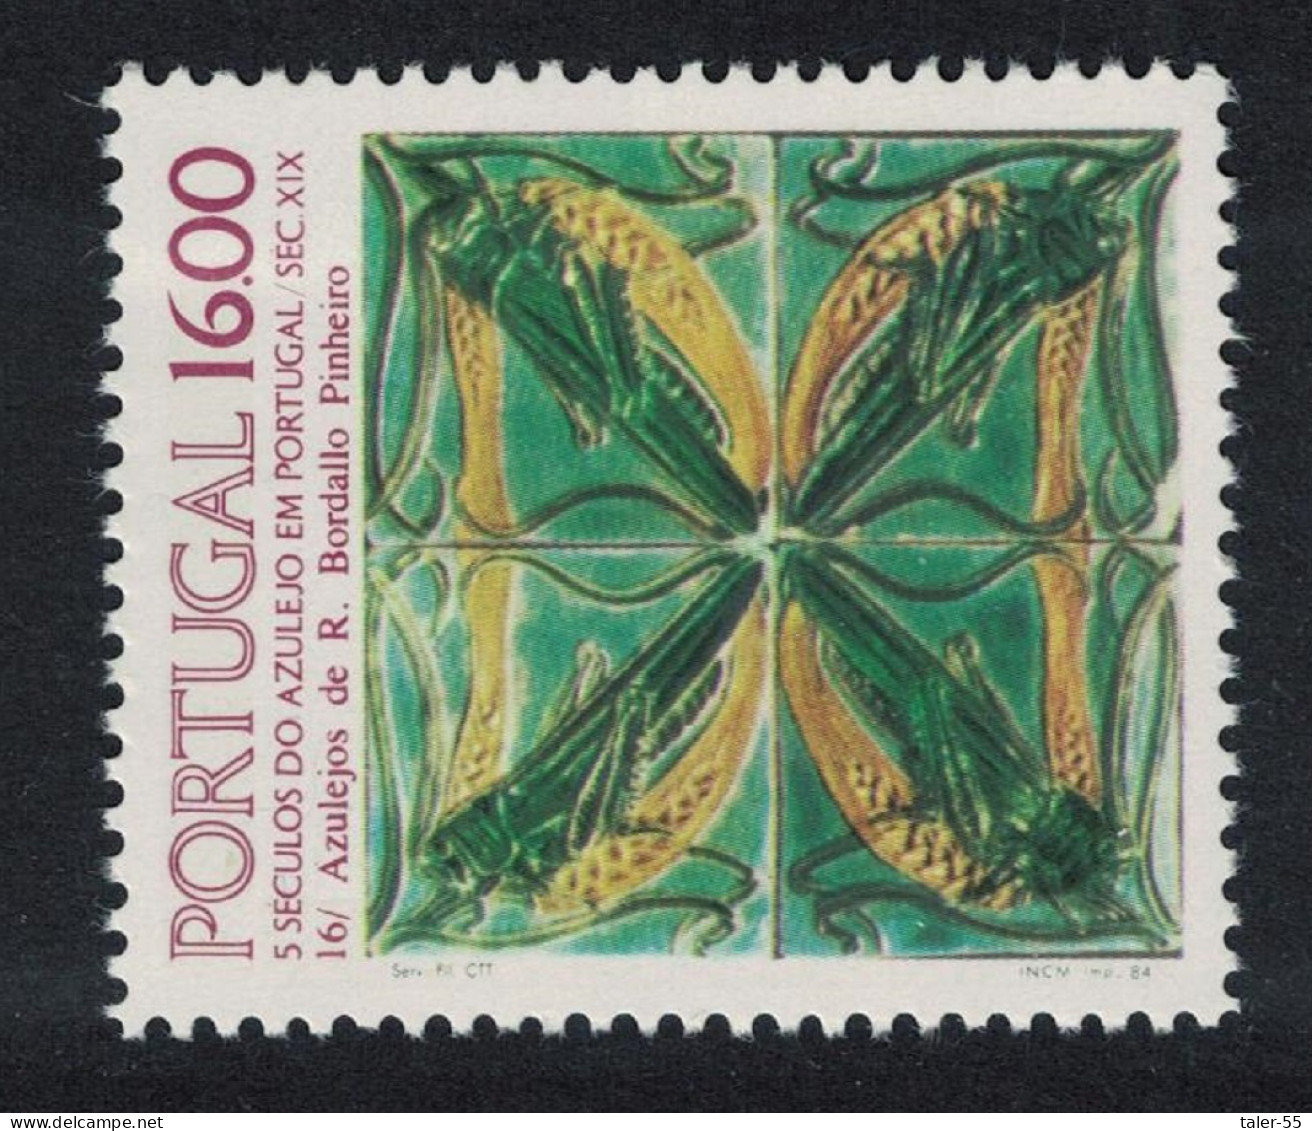 Portugal Tiles 16th Series 1984 MNH SG#1976 - Ungebraucht